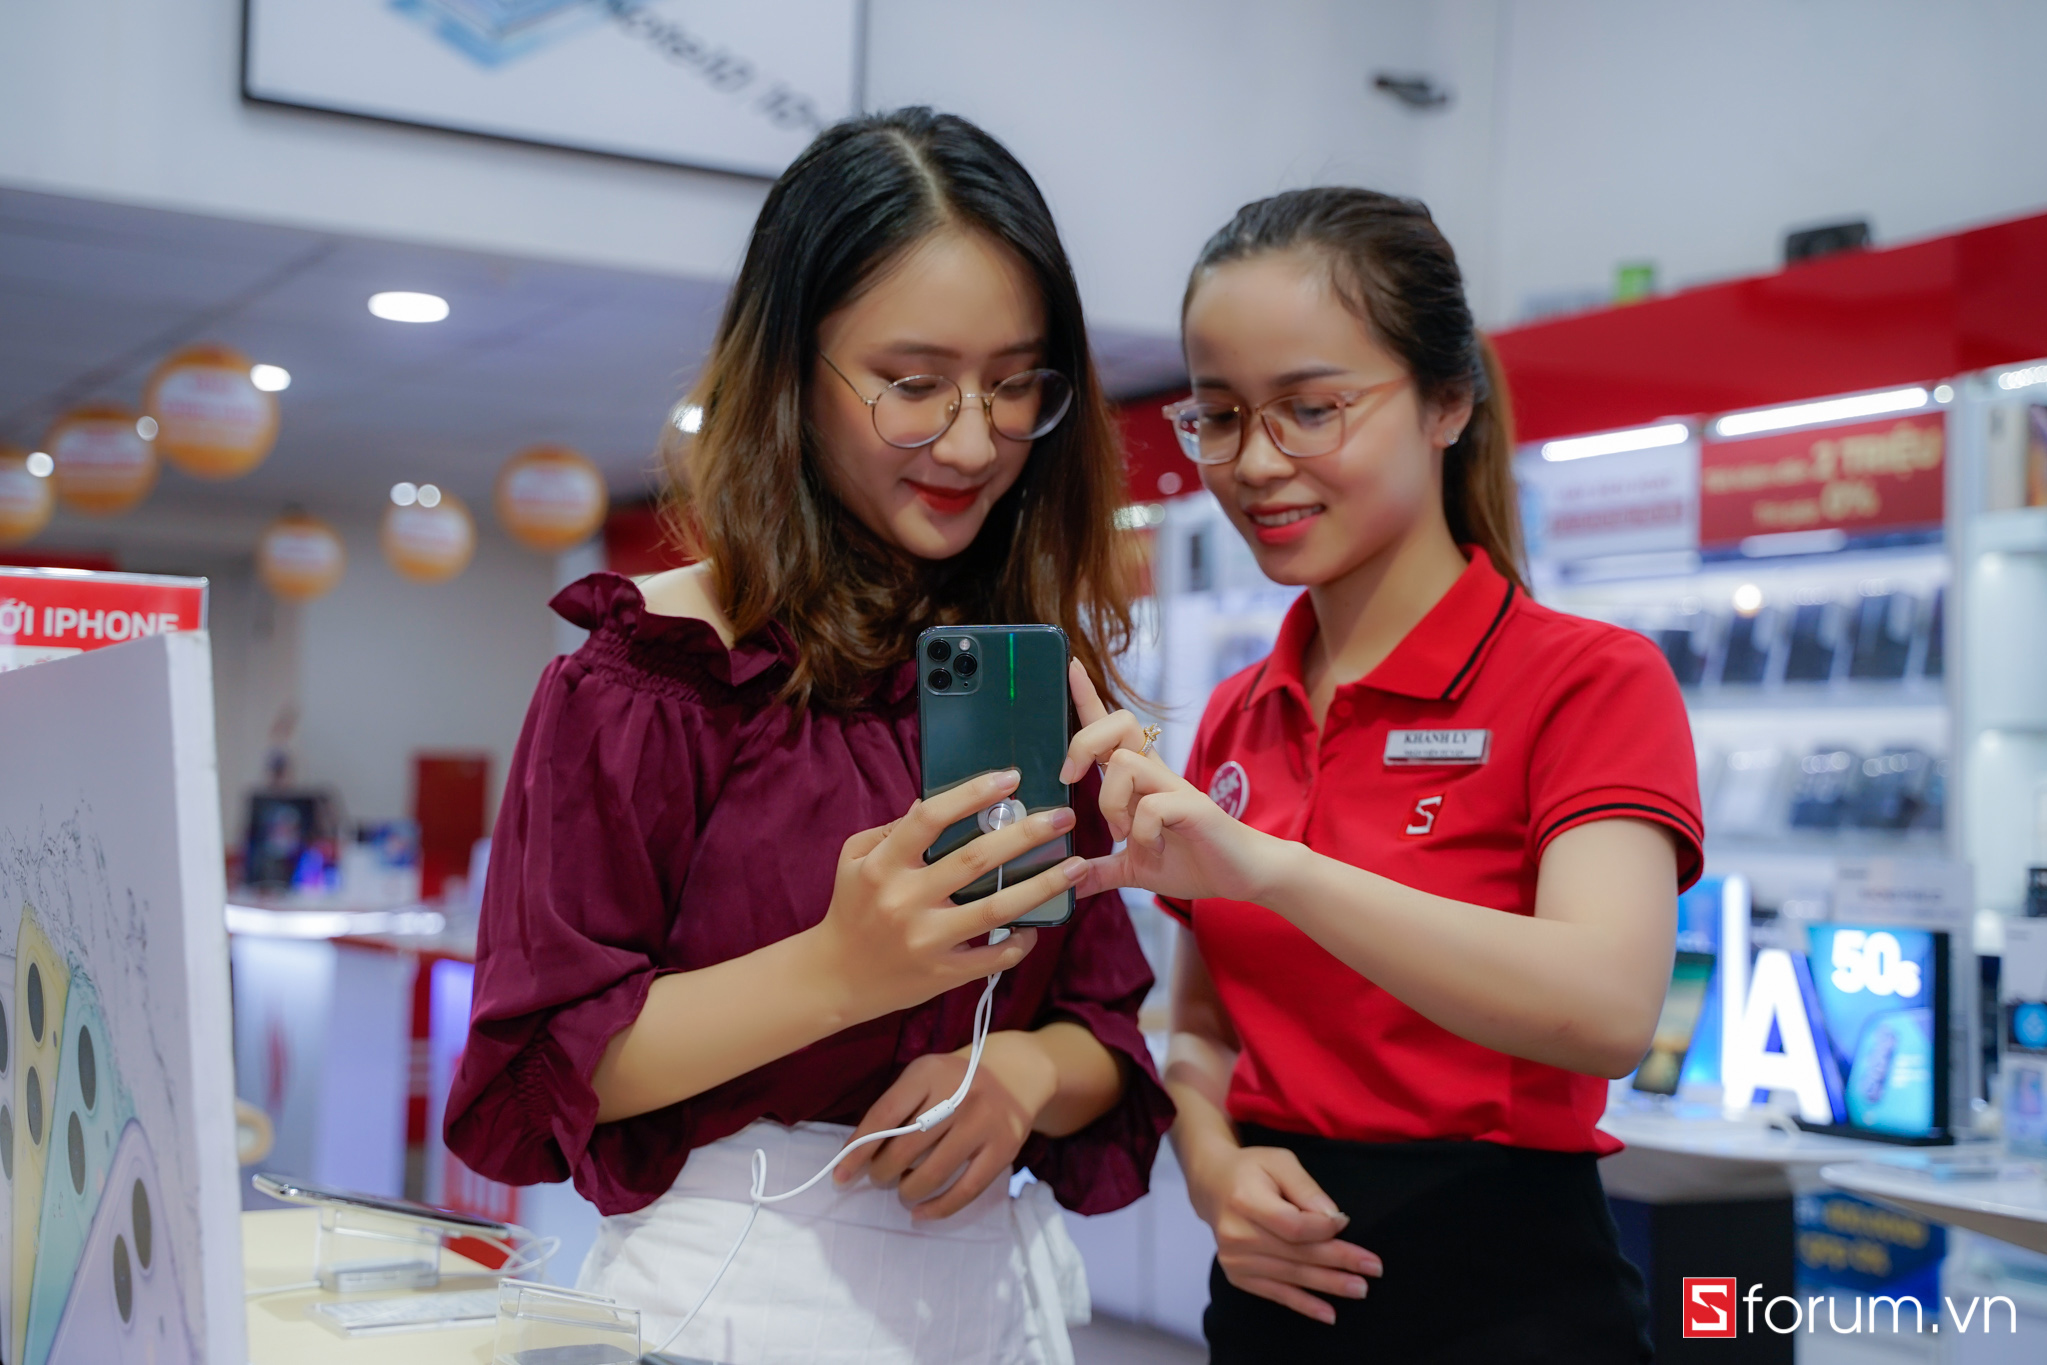 CellphoneS trở thành đại lý bán lẻ uỷ quyền iPhone chính hãng VN/A của Apple Việt Nam